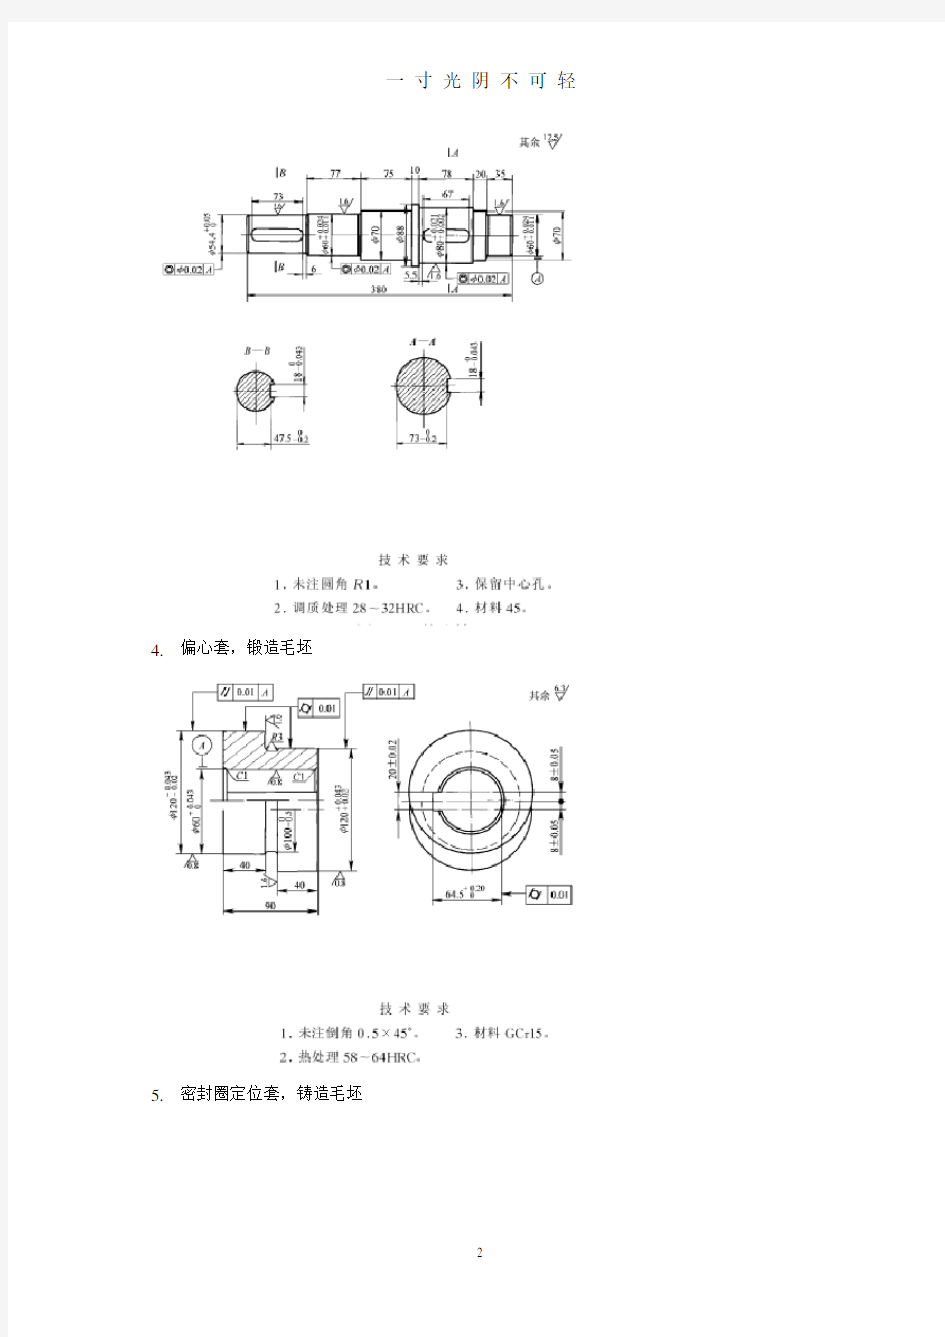 机械制造技术基础课程设计零件图40题.pdf